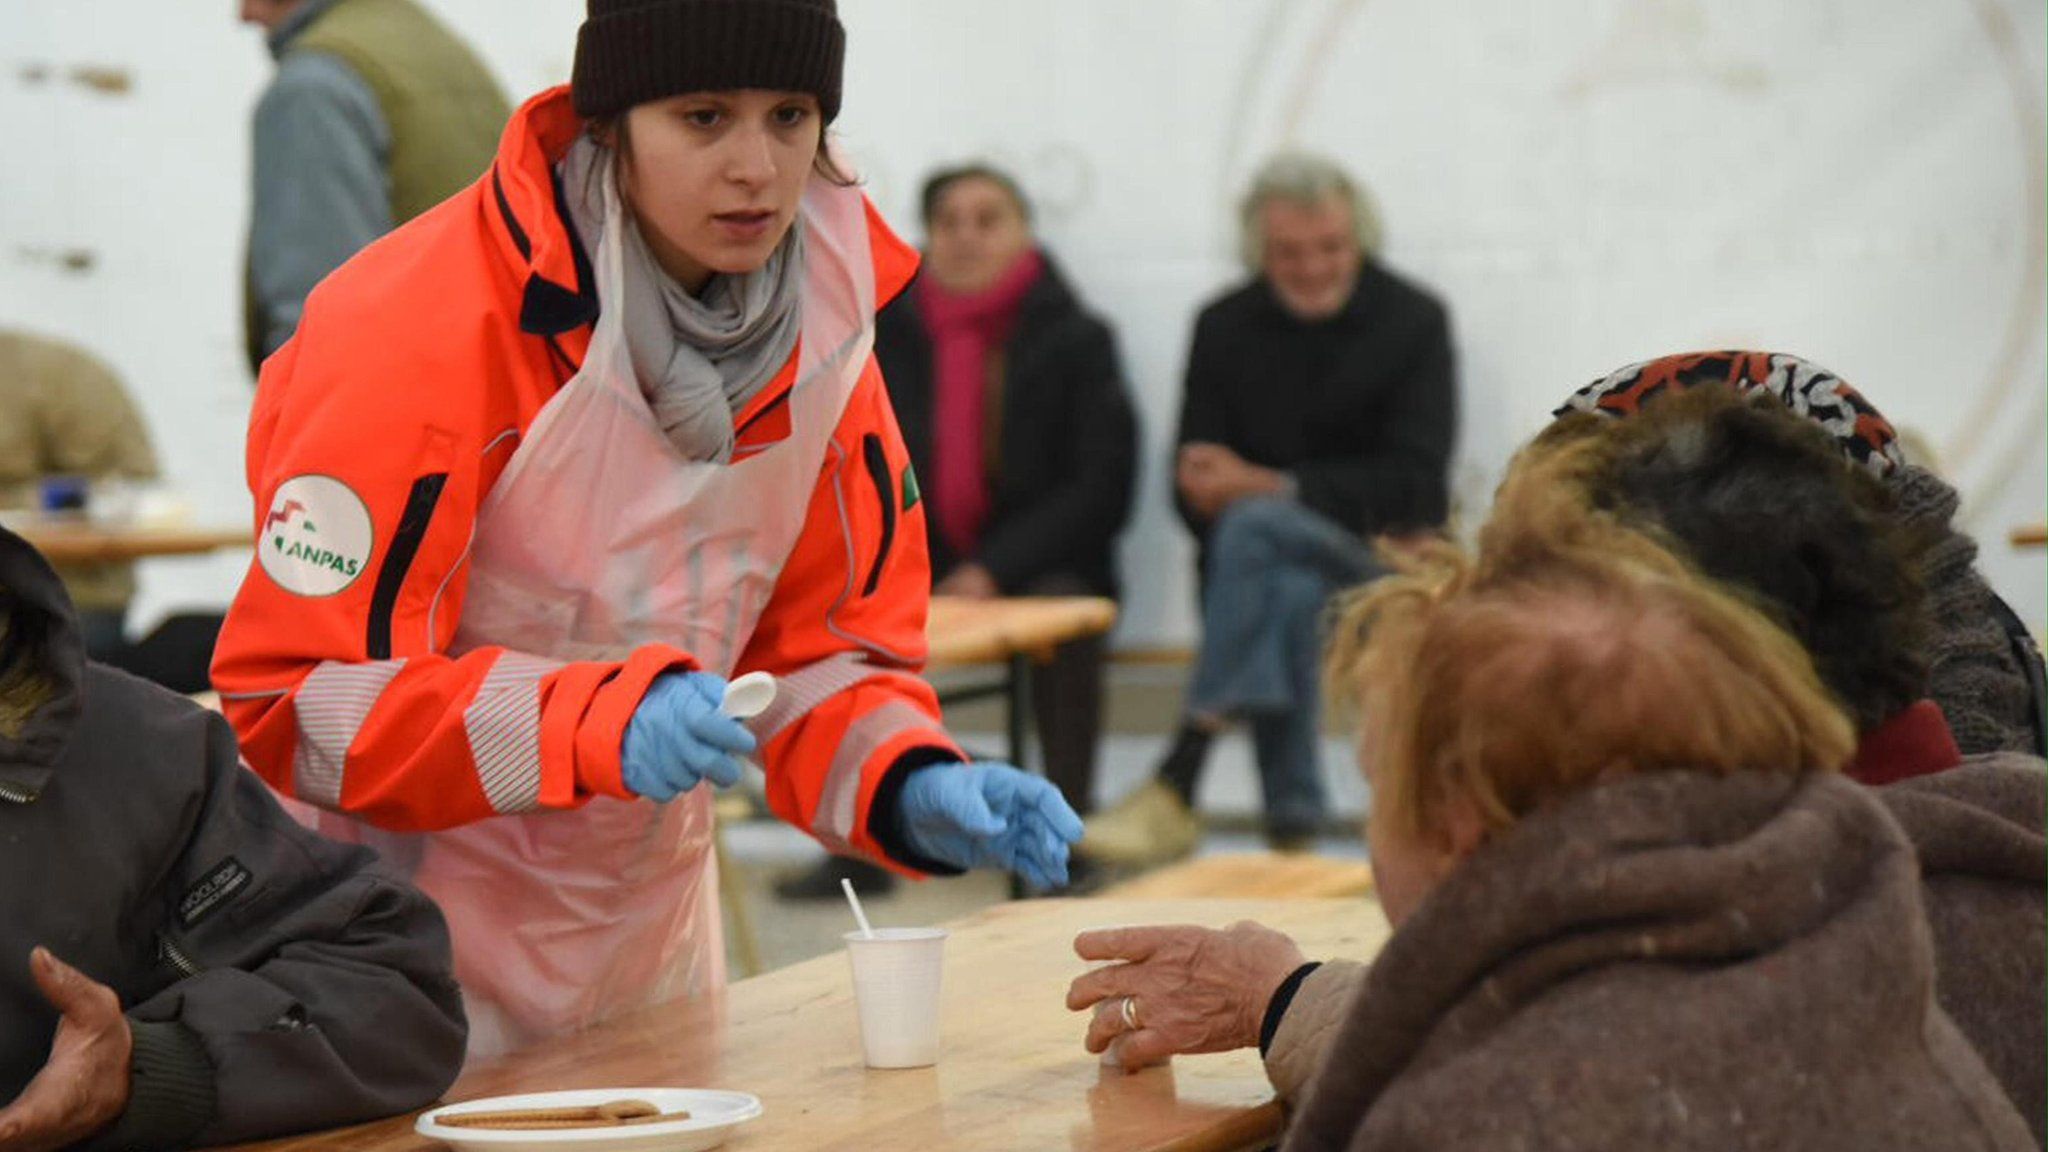 Помощь людям в импровизированном лагере на спортивной площадке в Норче, Италия (31 октября 2016 г.)